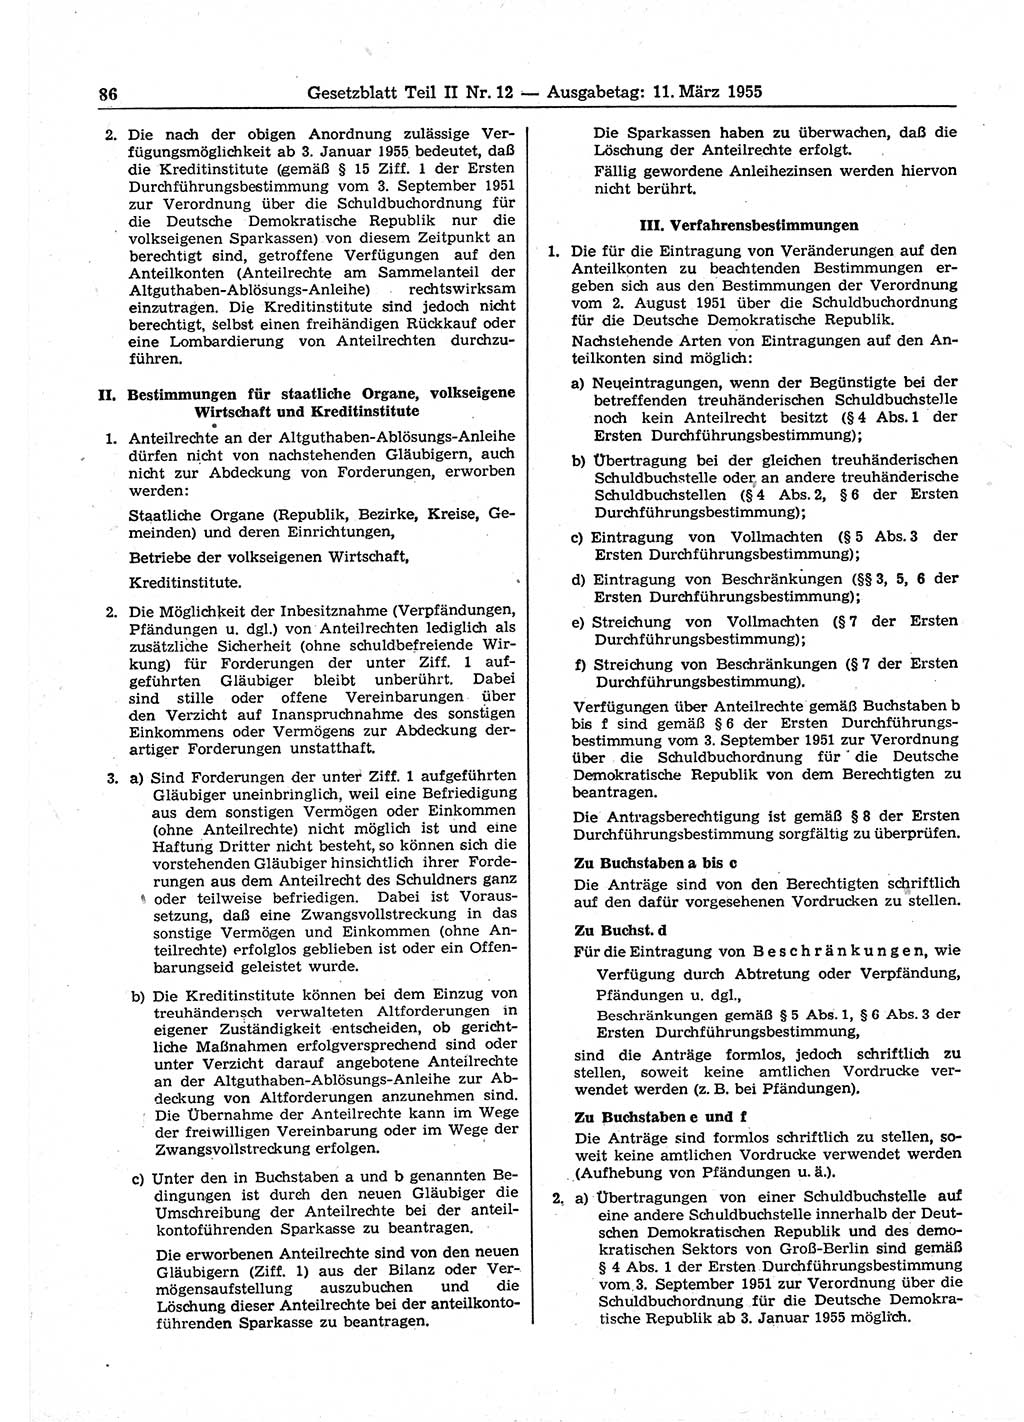 Gesetzblatt (GBl.) der Deutschen Demokratischen Republik (DDR) Teil ⅠⅠ 1955, Seite 86 (GBl. DDR ⅠⅠ 1955, S. 86)